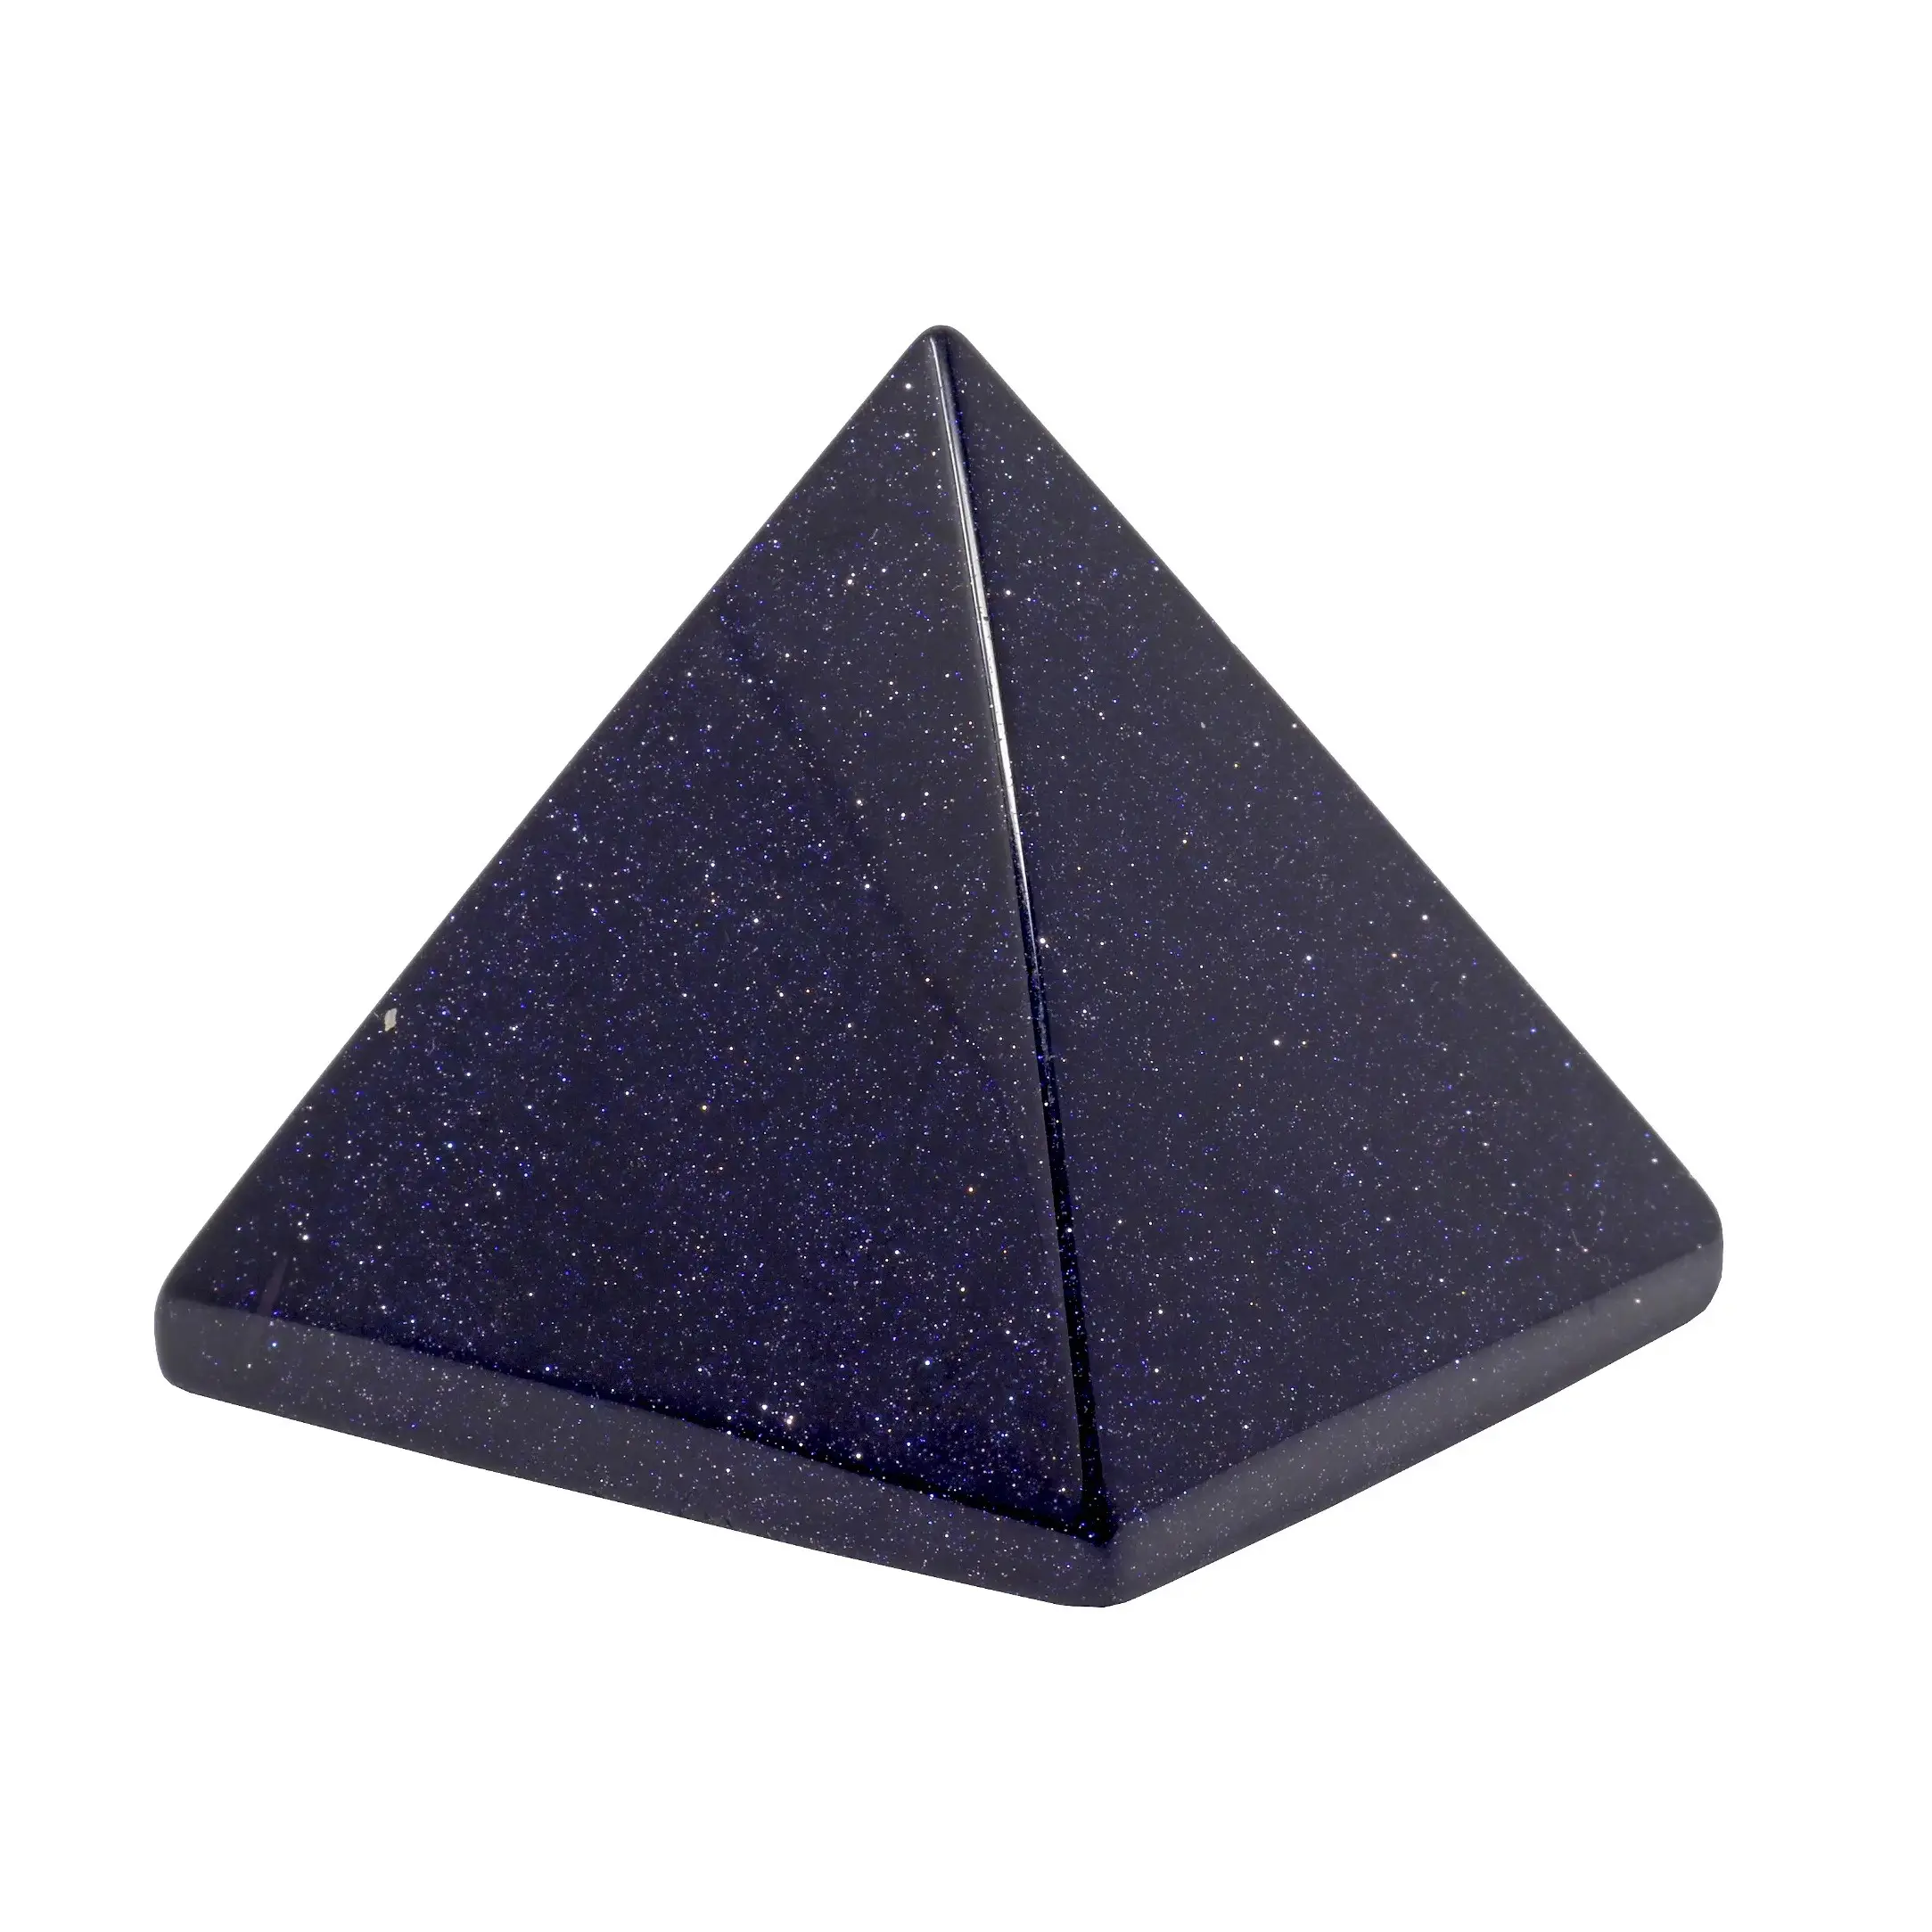 Hochwertige blaue Goldstein pyramide für Dekorations-und Heilung eigenschaften zum Großhandels preis erhältlich